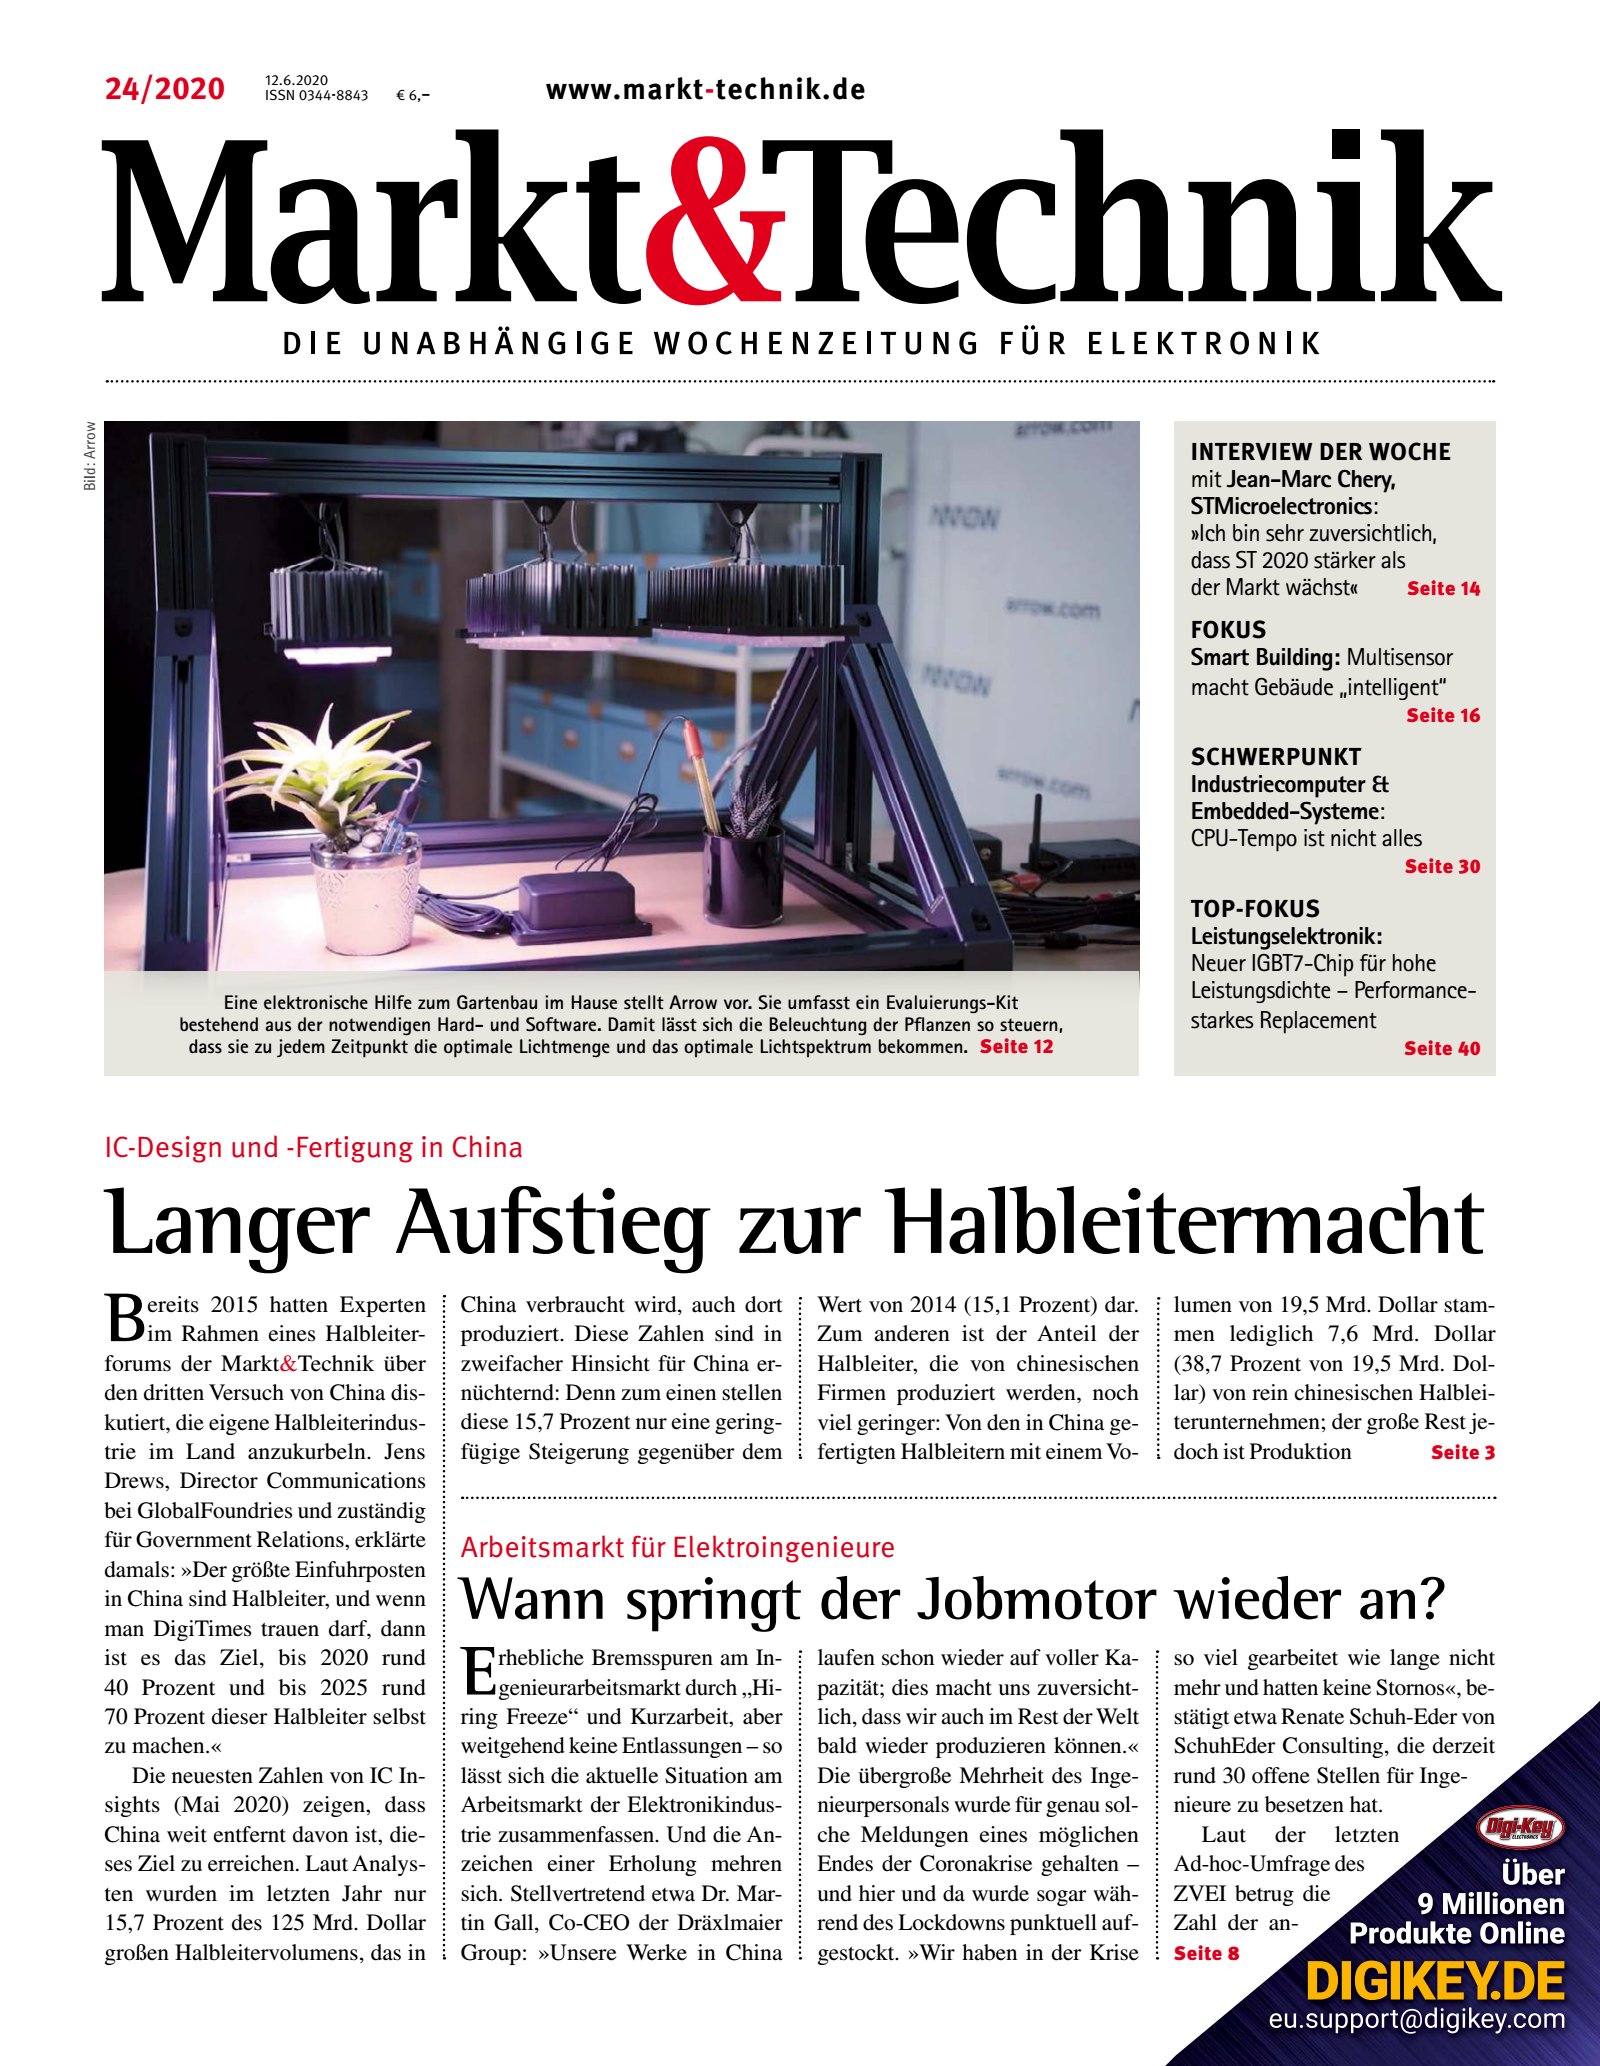 Markt&Technik 24/2020 Digital